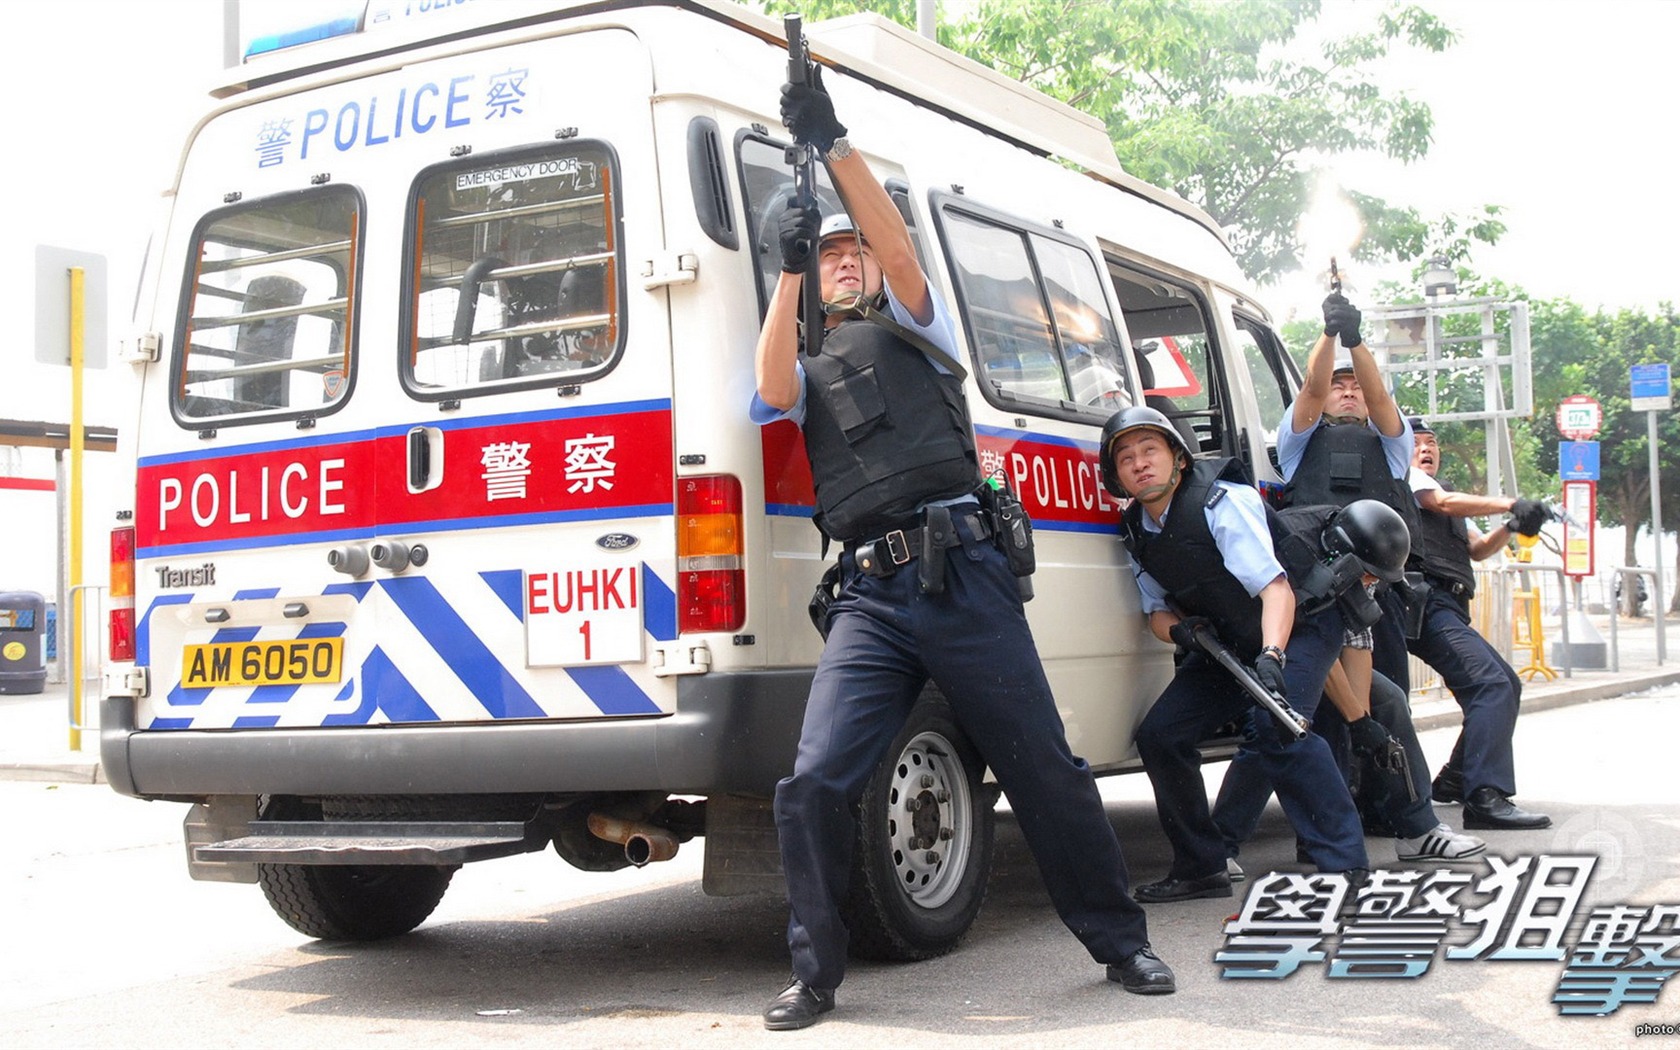 Beliebte TVB Schauspielschule Police Sniper #2 - 1680x1050